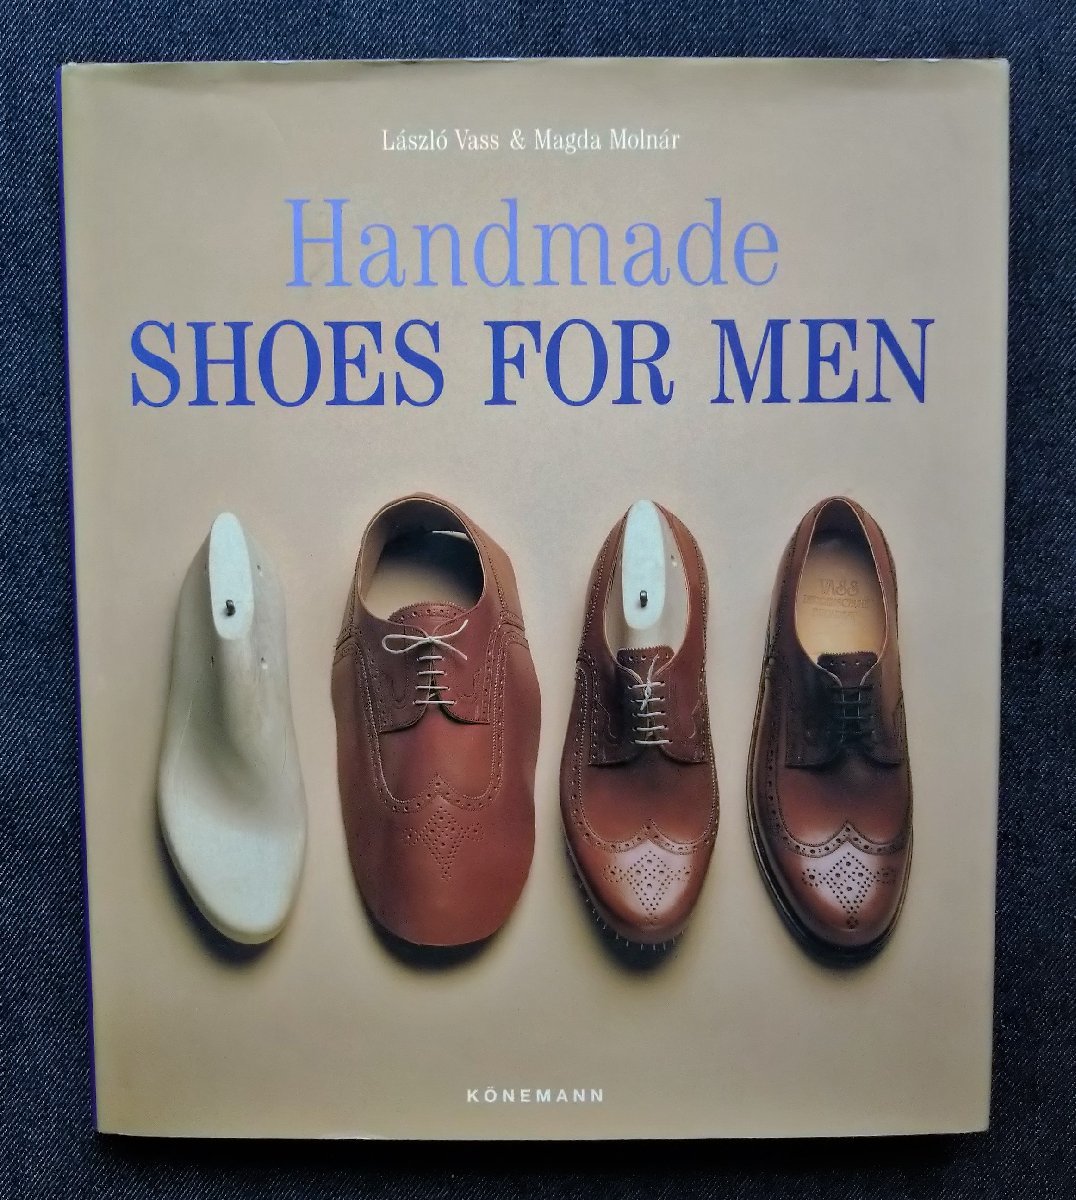 洋書 紳士靴 ハンドメイド・シューズ Handmade Shoes for Men Konemann版 靴職人 メンズ 男性靴 靴作り デザイン